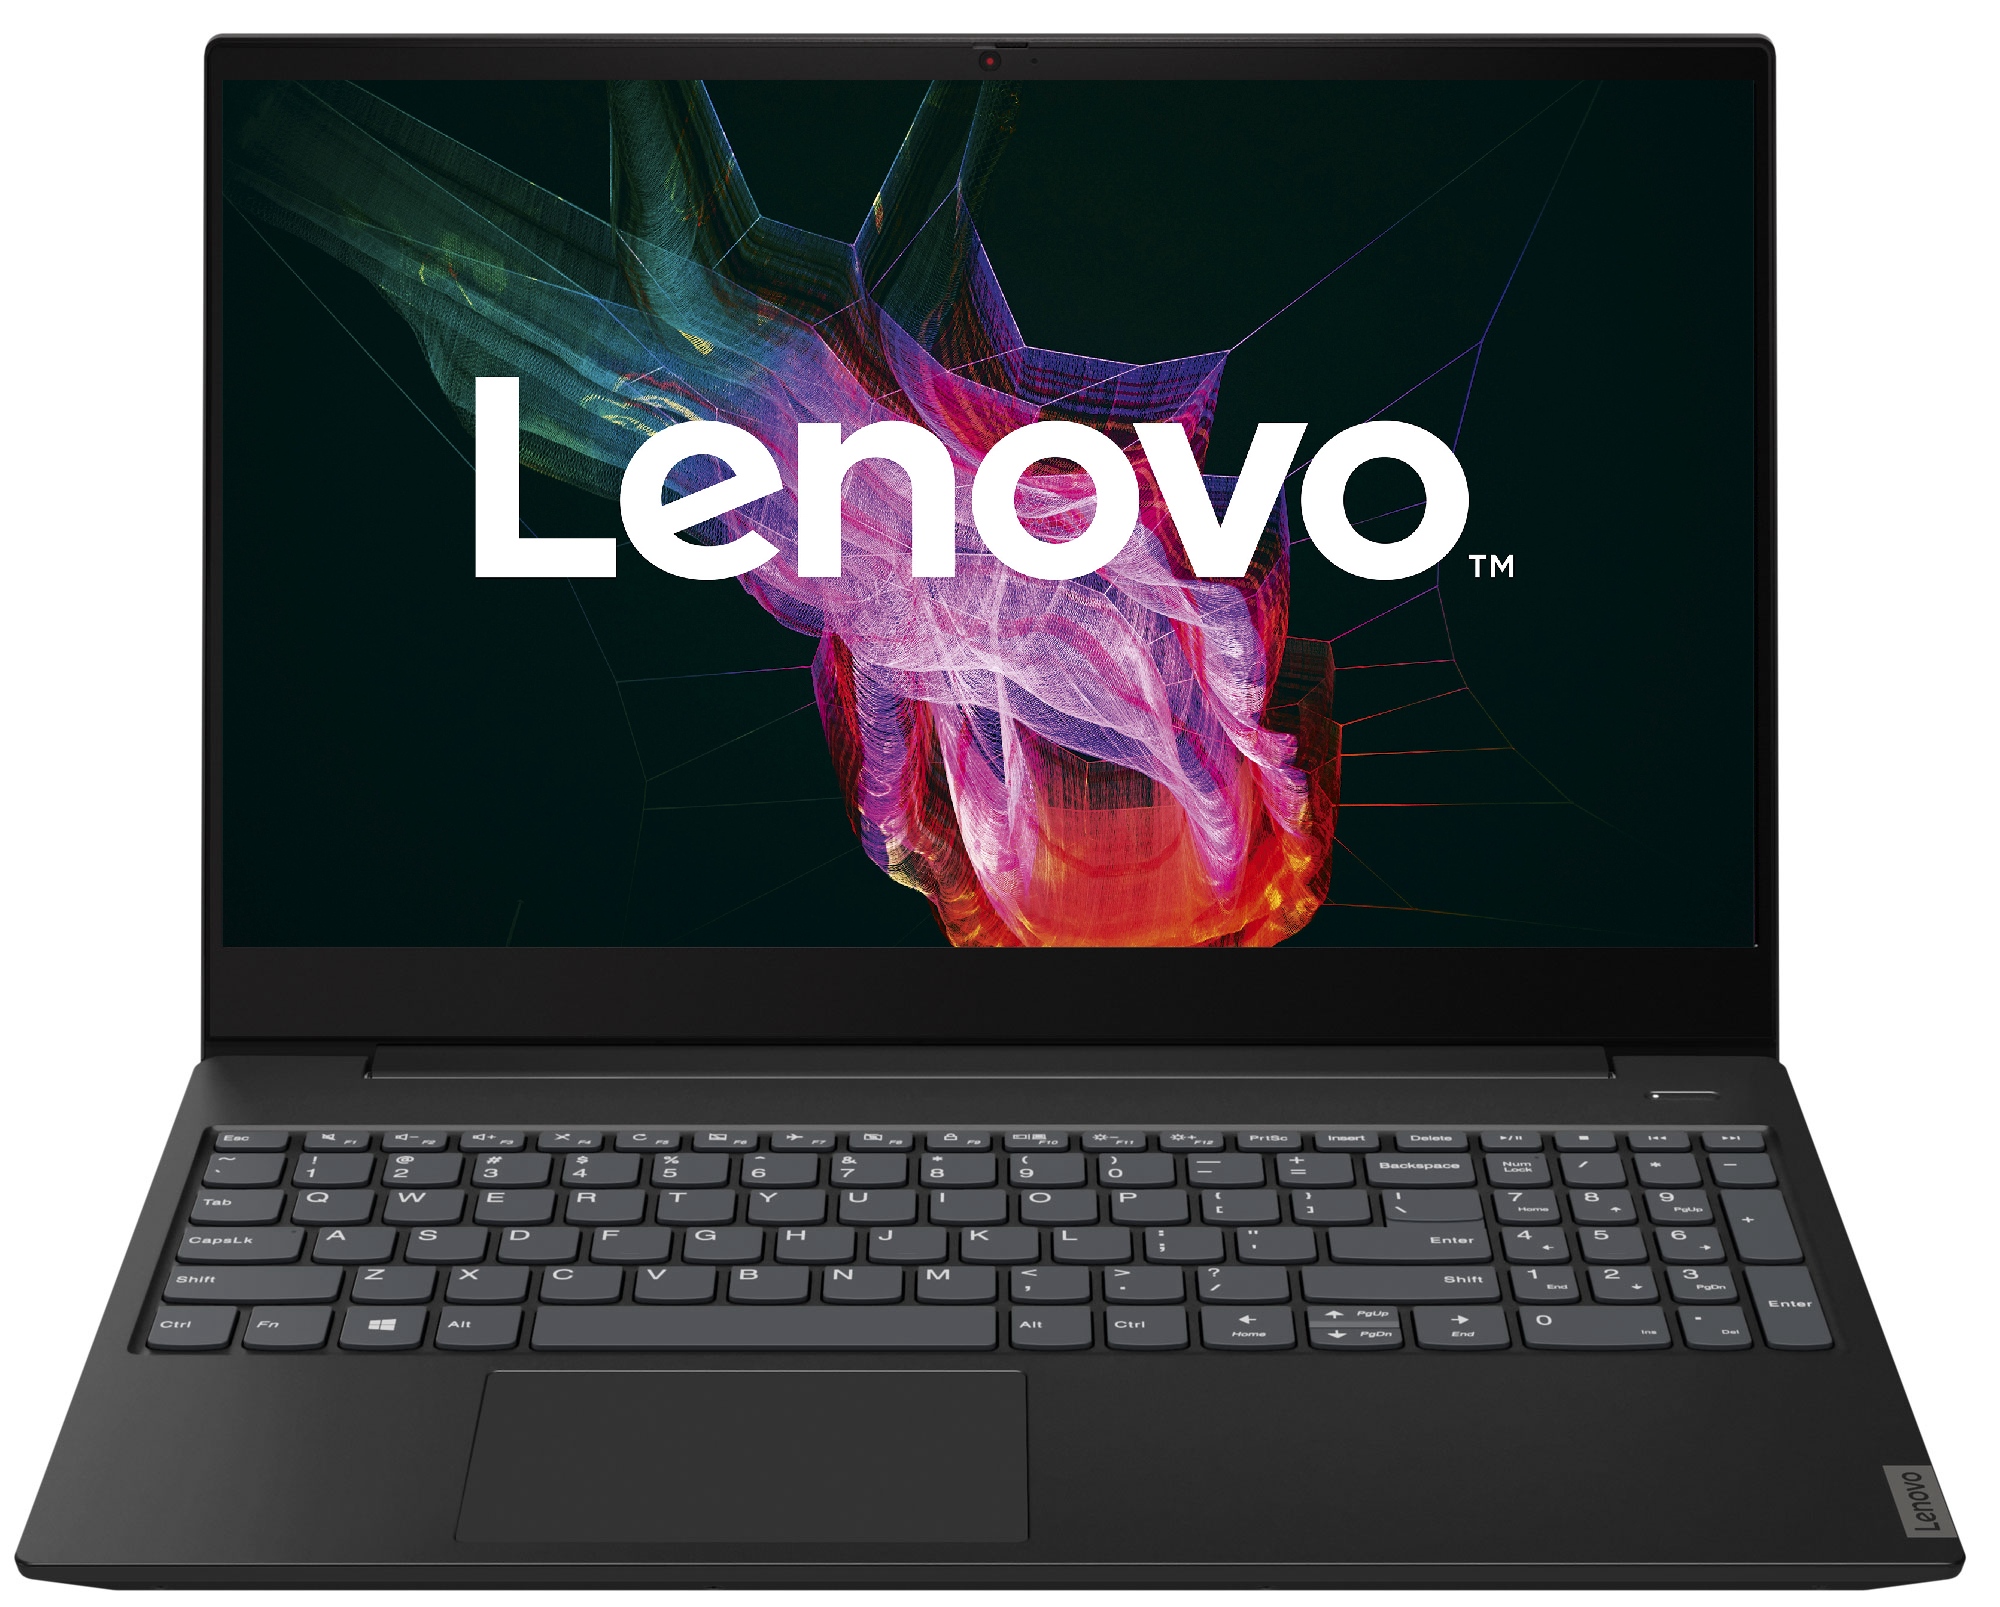 Ноутбук Lenovo Купить Дешево